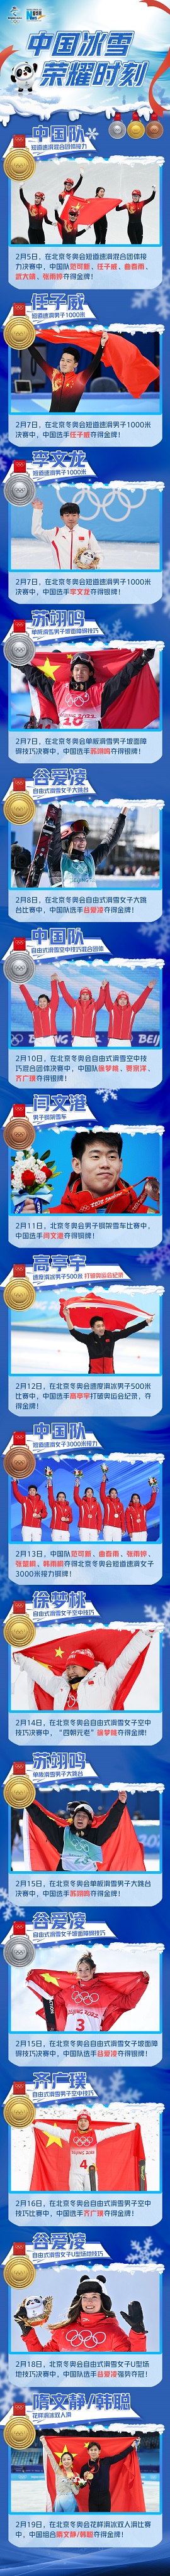 2022冬季奥运会中国金牌